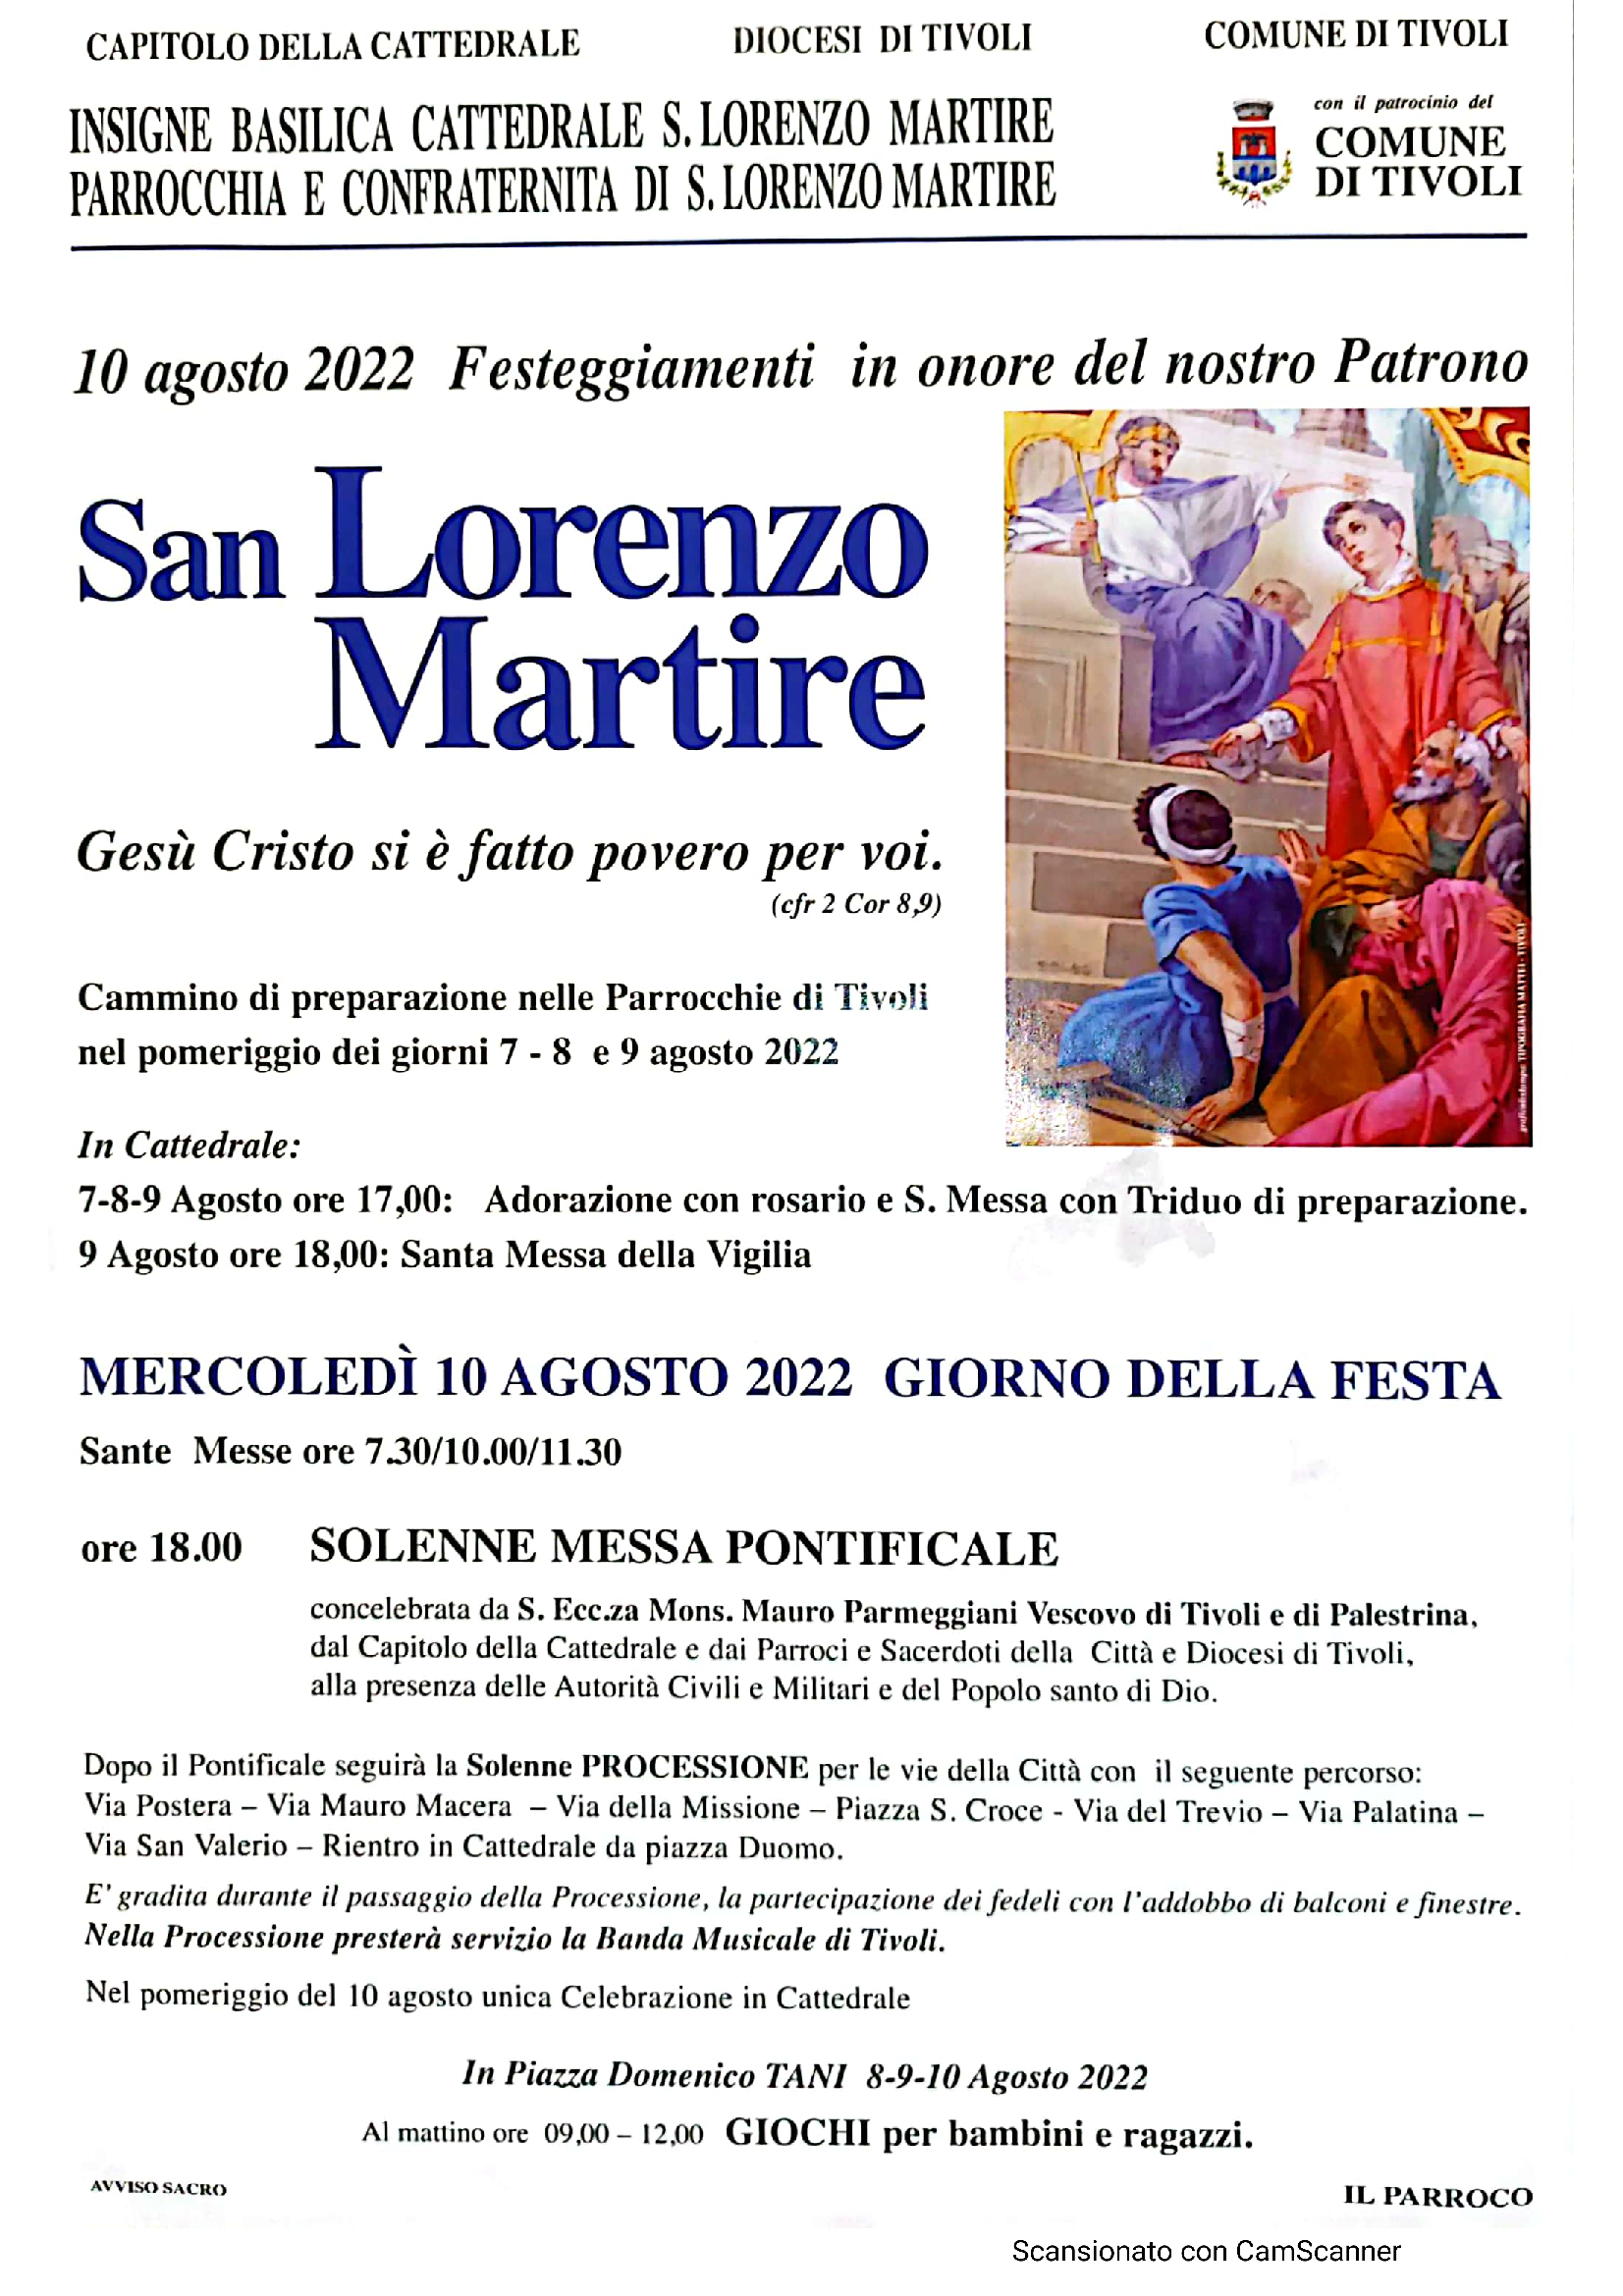 Festa di San Lorenzo 2022. Programma delle celebrazioni liturgiche e Giochi in piazza